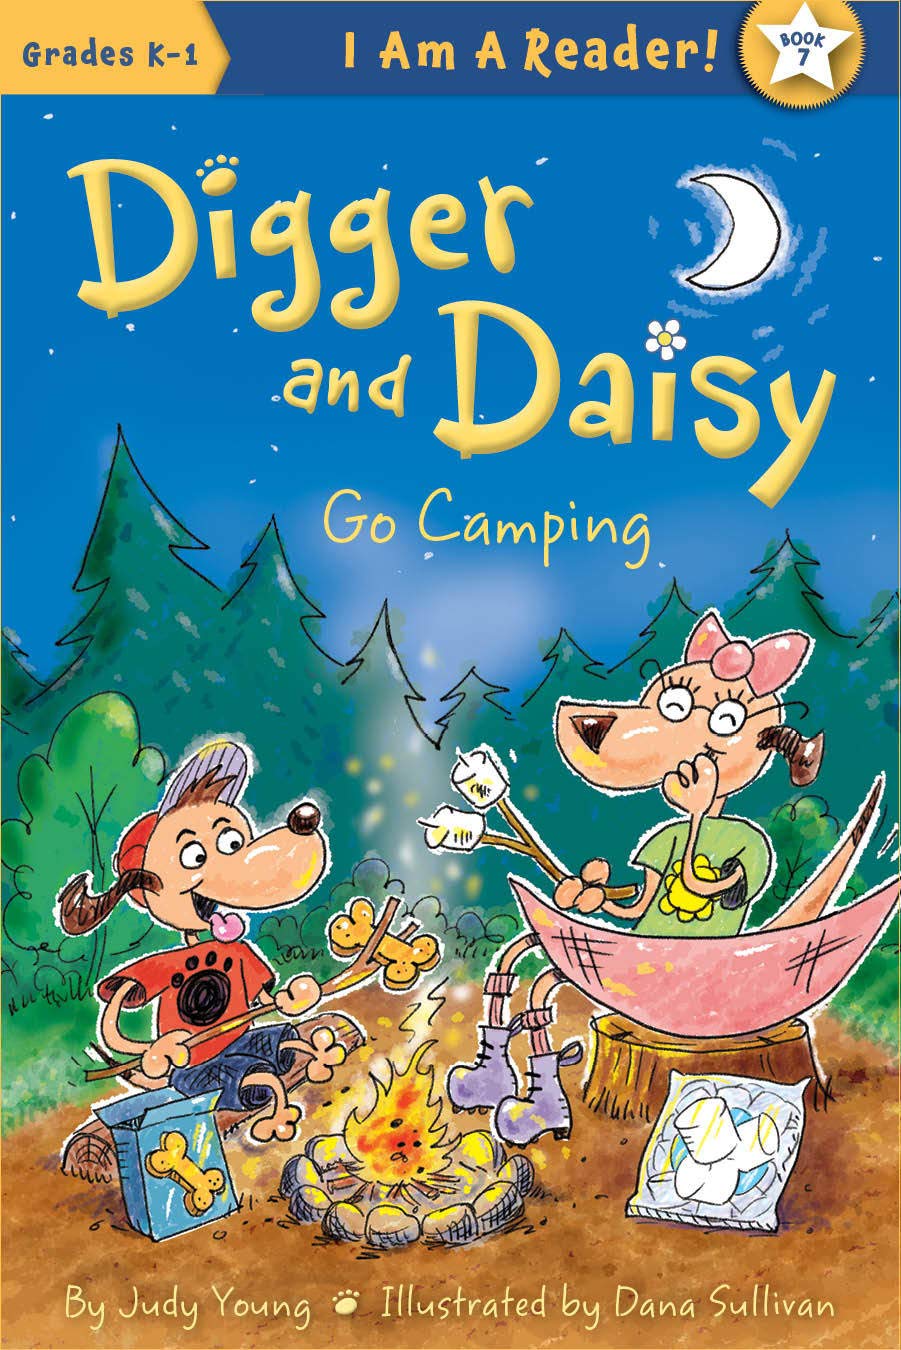 Digger and Daisy Go Camping (I AM A READER: Digger and Daisy)